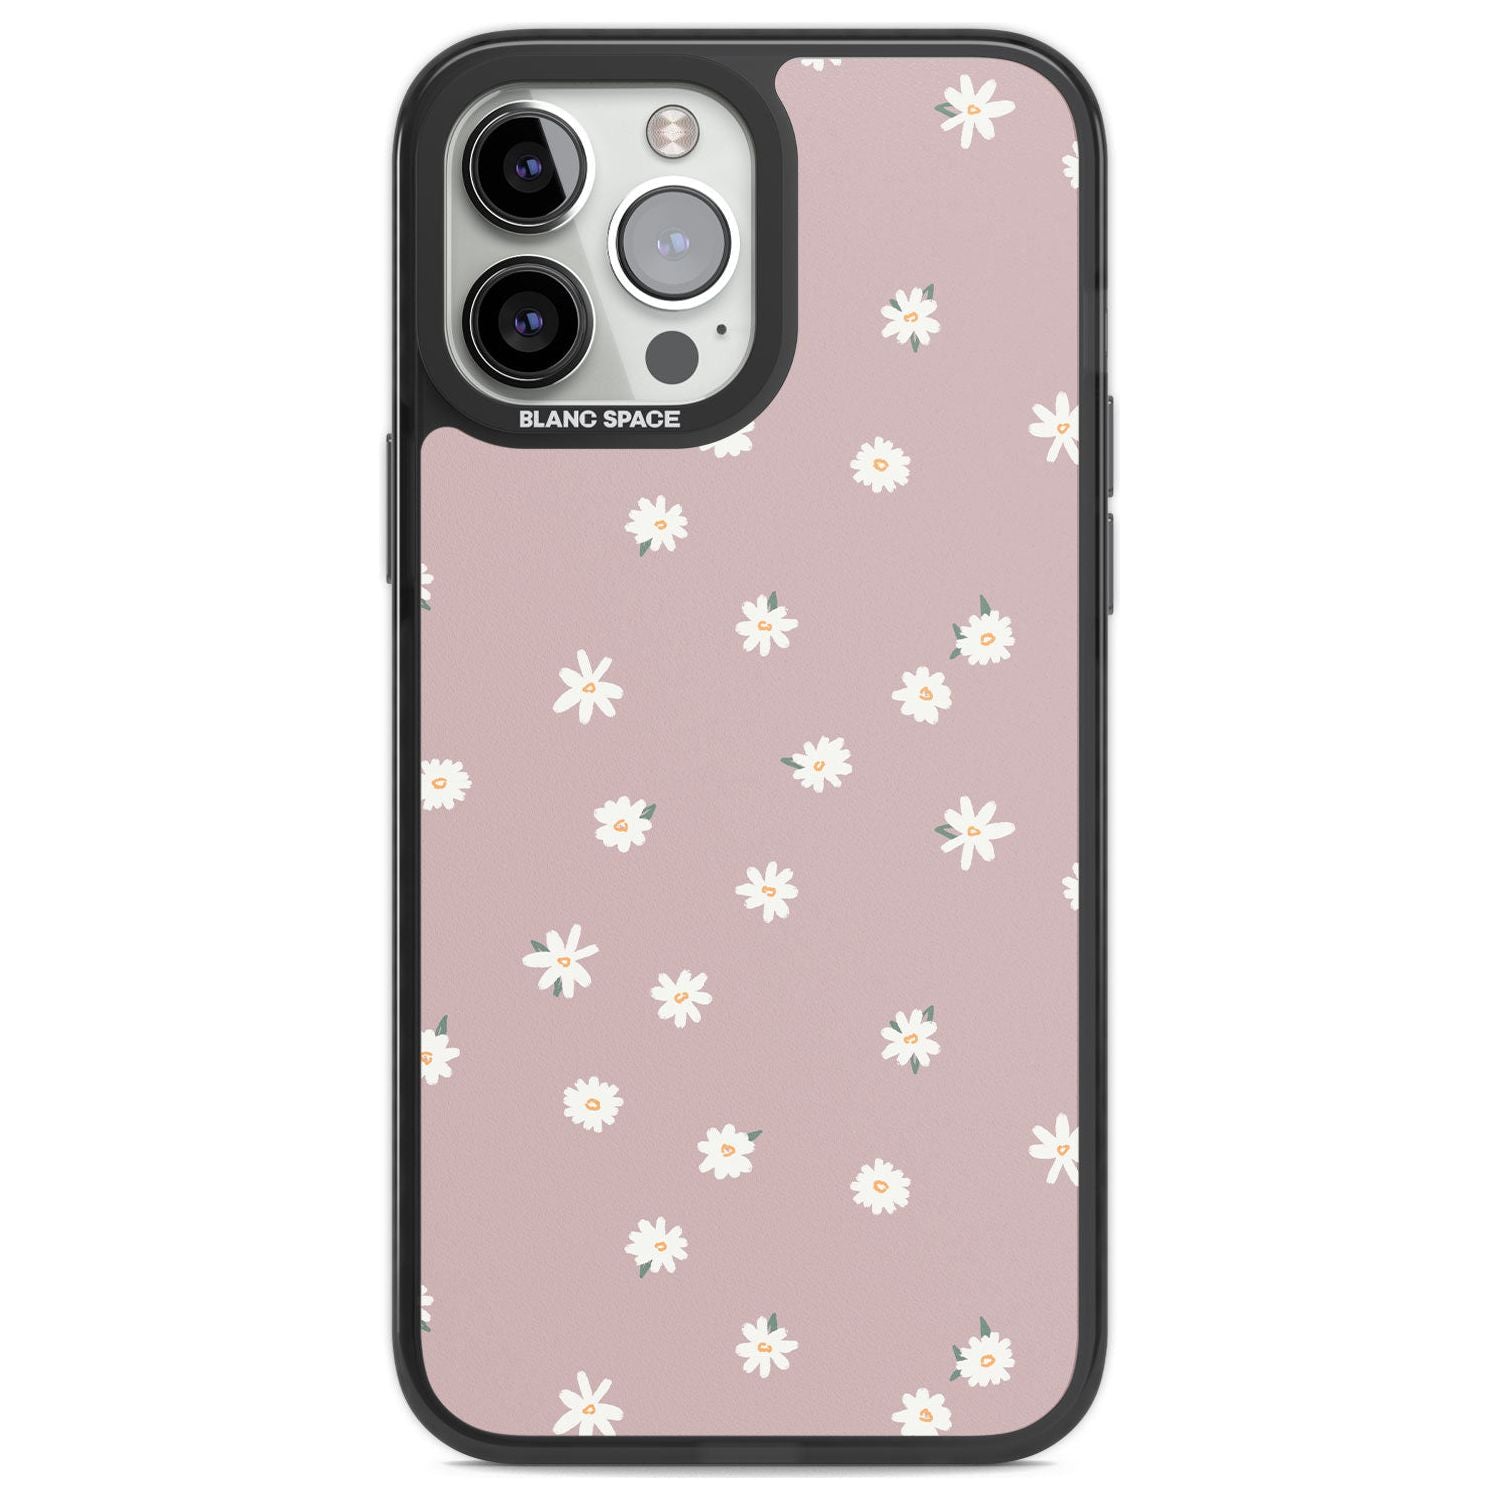 Dark Pink Cute Floral Design Phone Case iPhone 13 Pro Max / Black Impact Case,iPhone 14 Pro Max / Black Impact Case Blanc Space